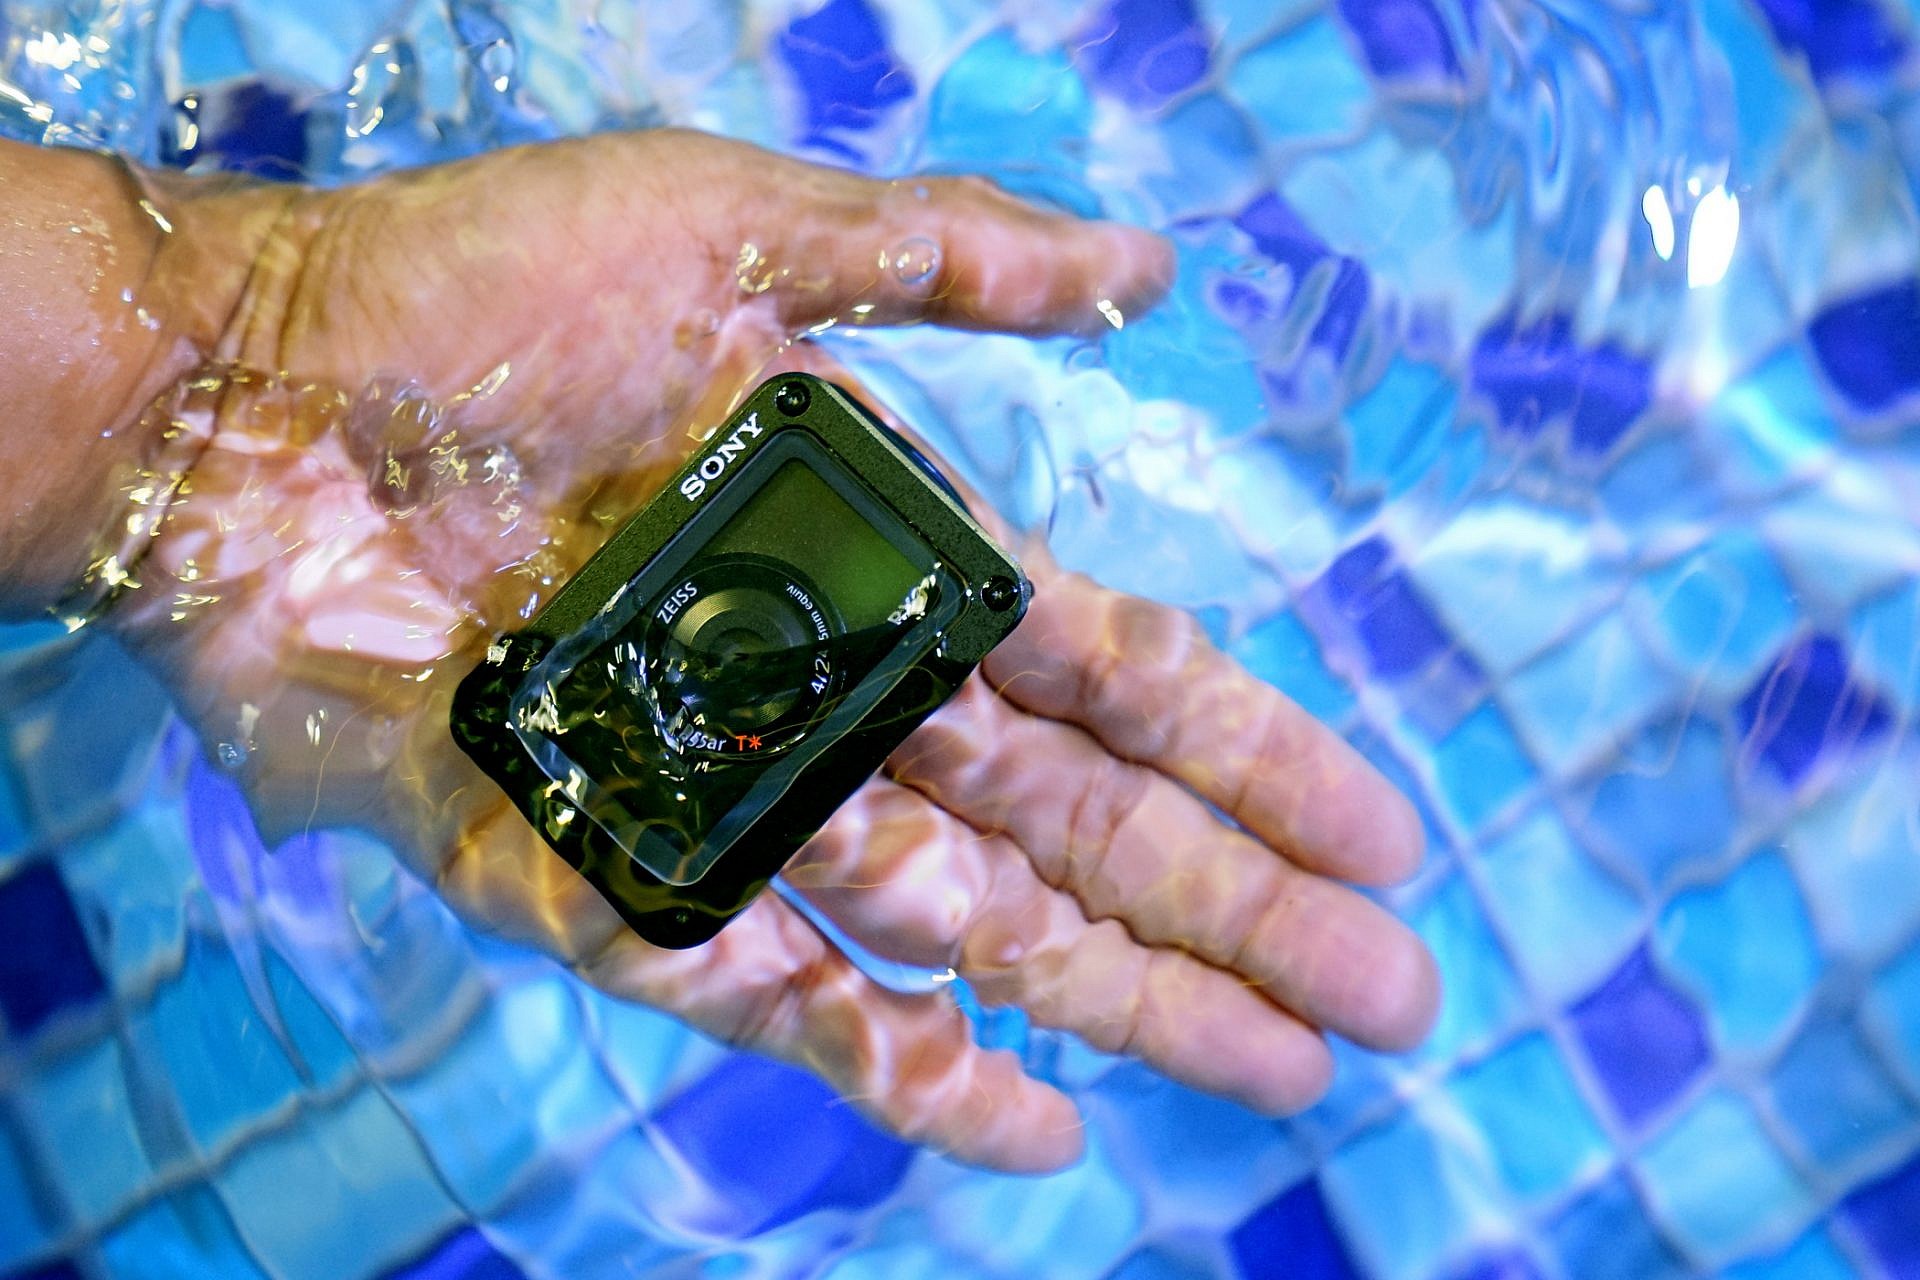 พรีวิว Sony RX0 กล้องจิ๋วสุดอึด กันน้ำ กันกระแทก เน้นงานระดับโปร